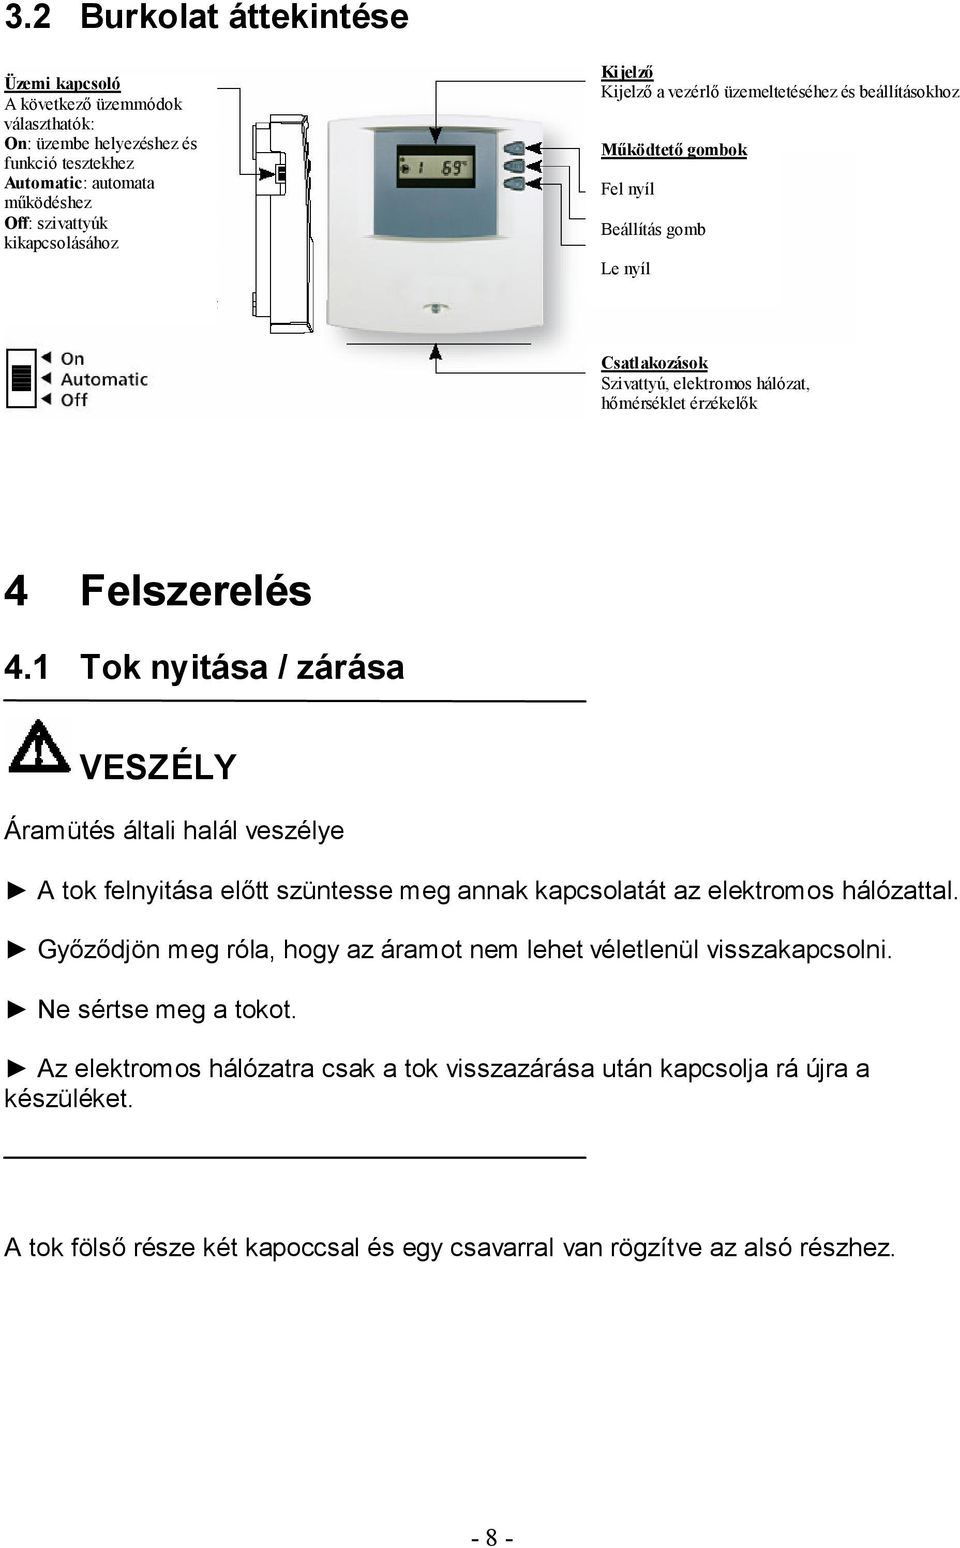 Felszerelési és használati útmutató. 2 bemenet, 1 kimenet - PDF Ingyenes  letöltés